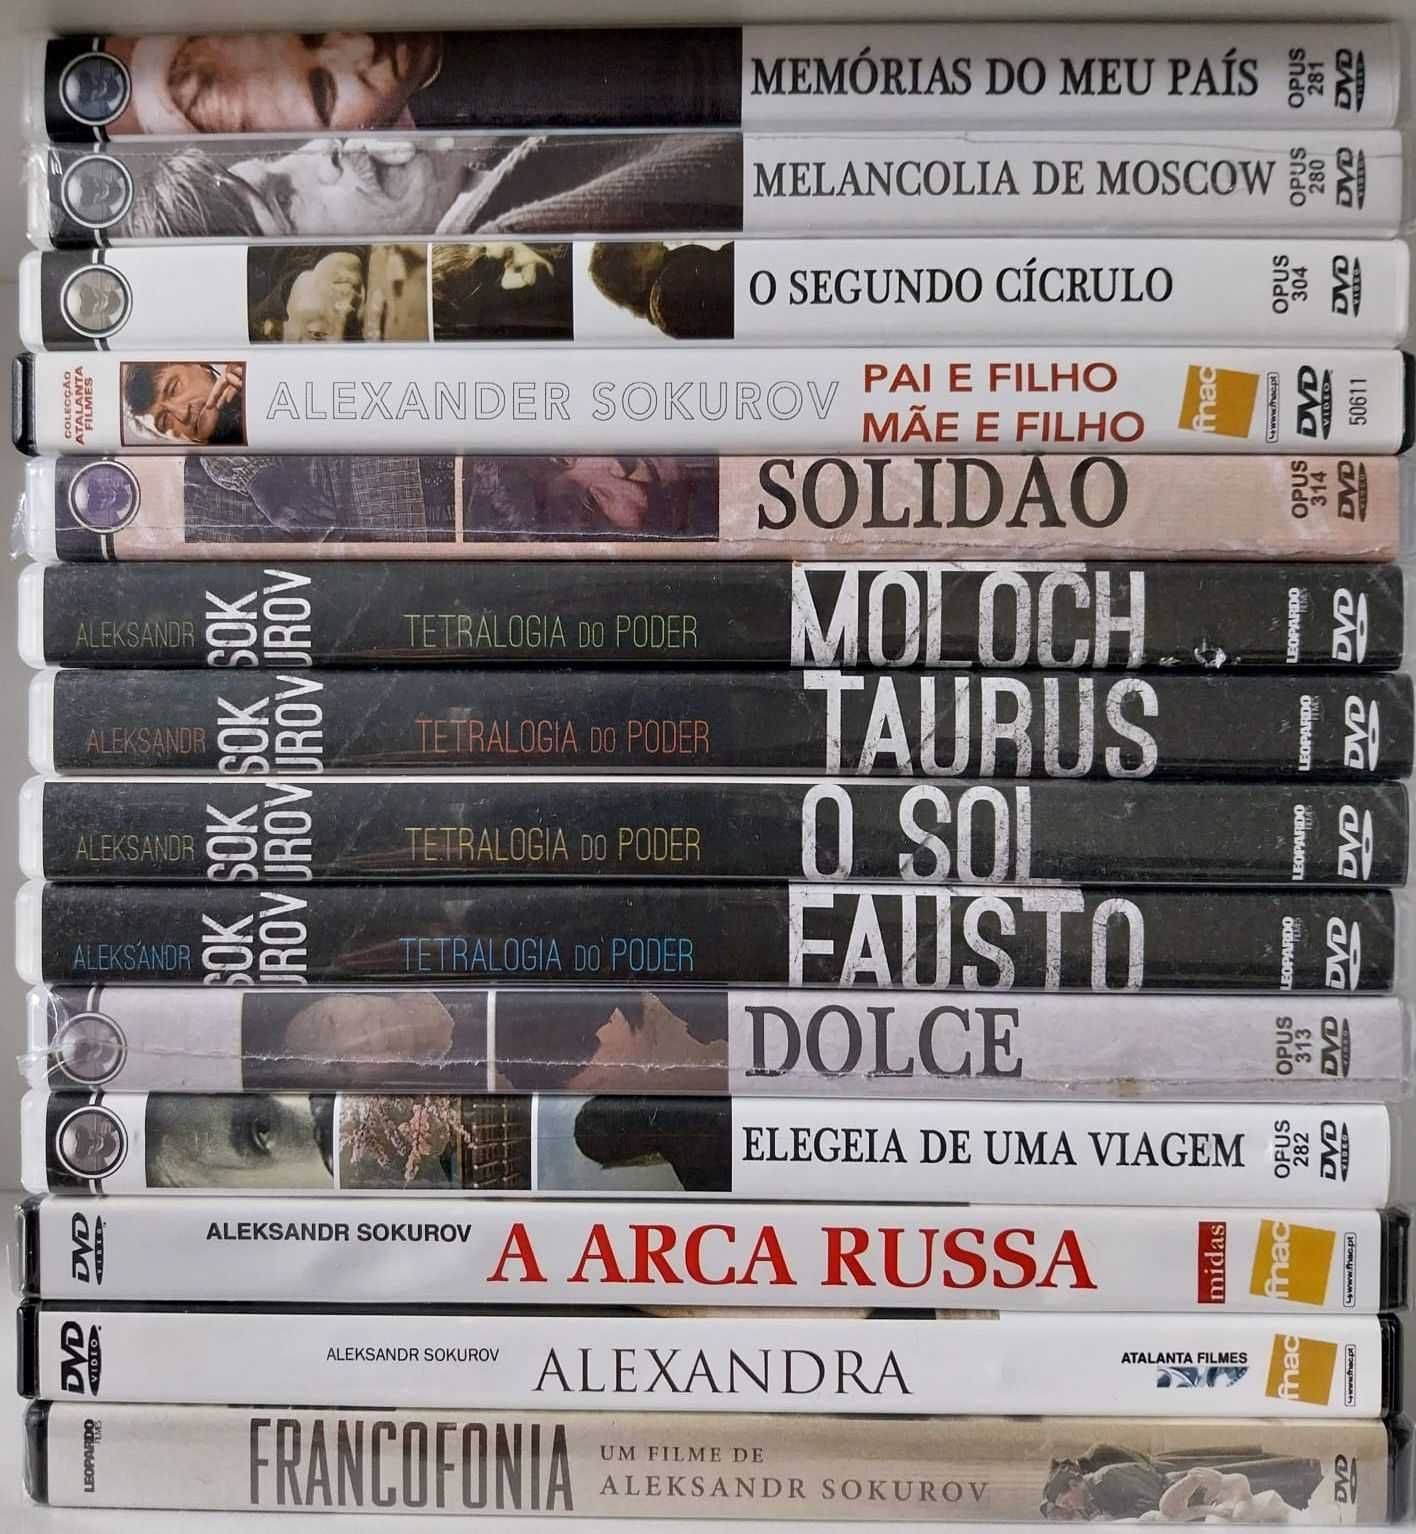 DVDs de filmes de Aleksandr Sokurov